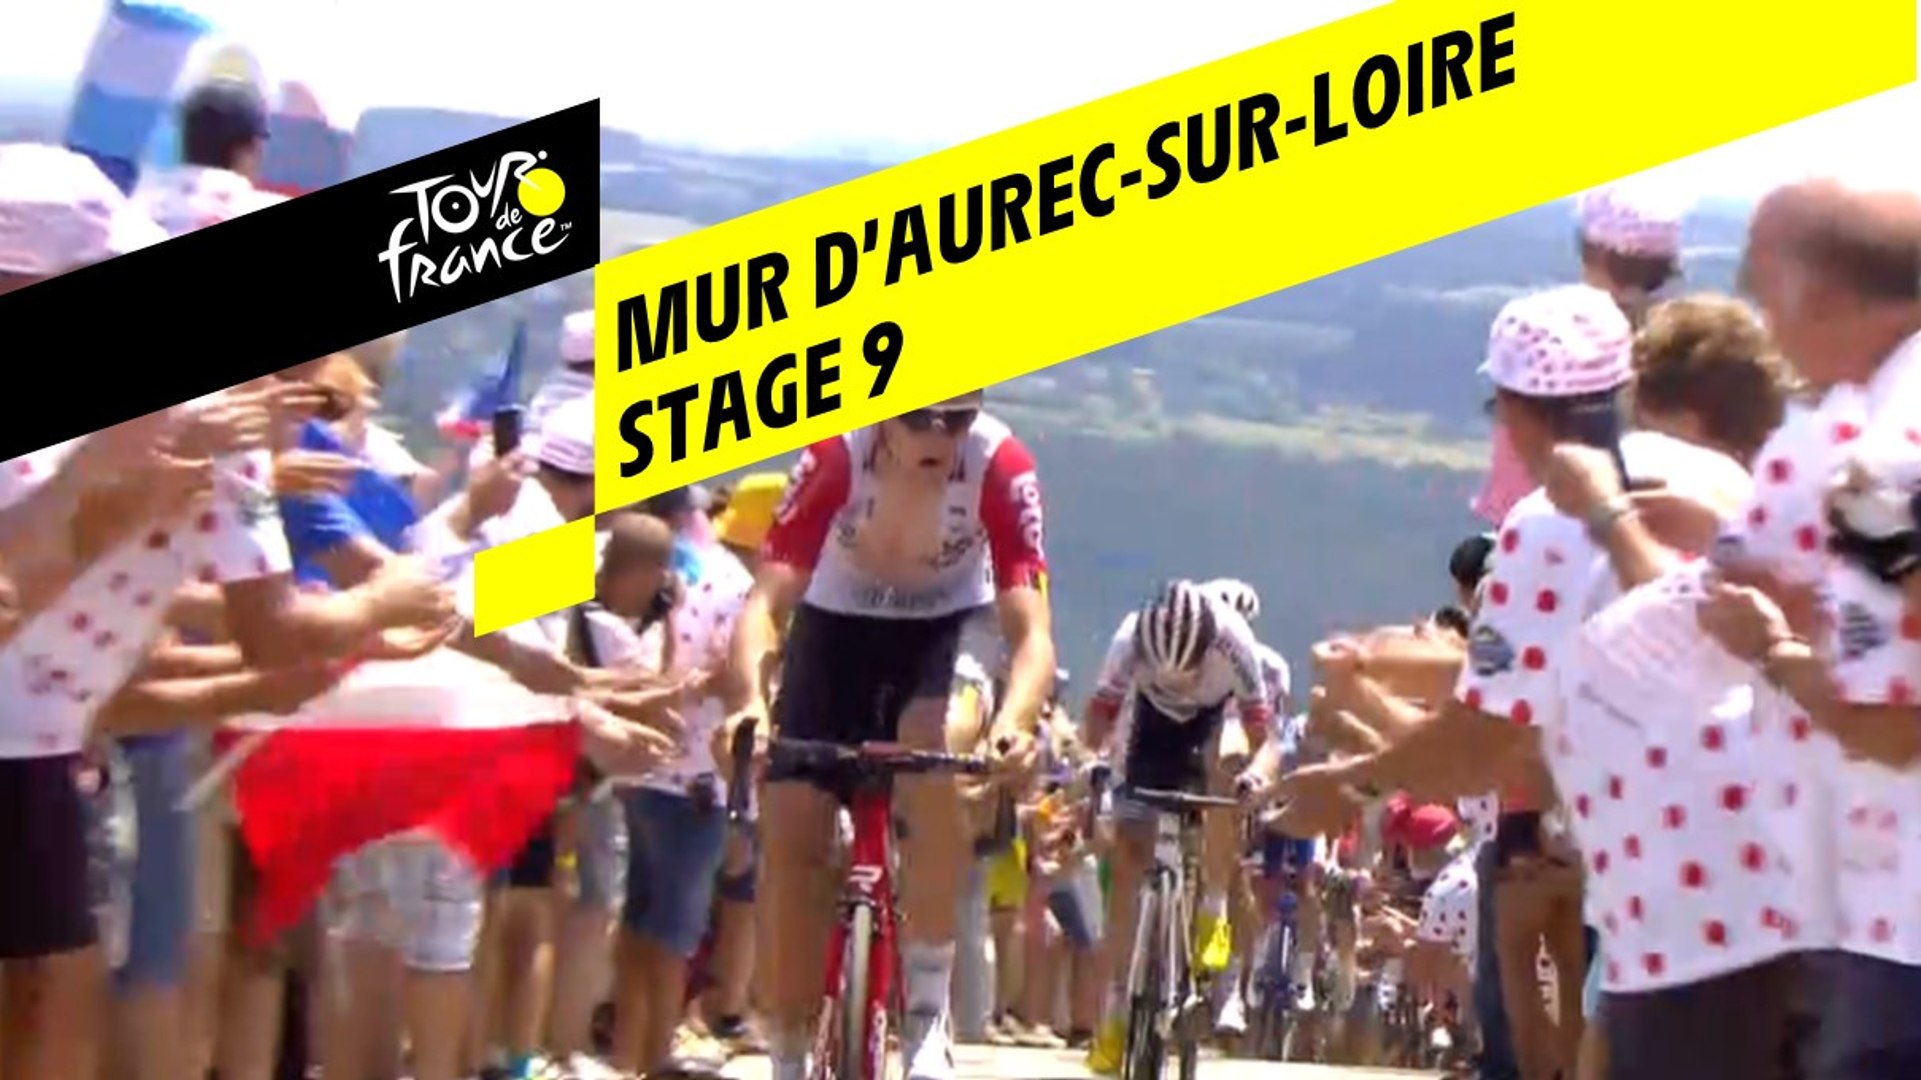 Mur d'Aurec-sur-Loire - Étape 9 / Stage 9 - Tour de France 2019 - Vidéo  Dailymotion